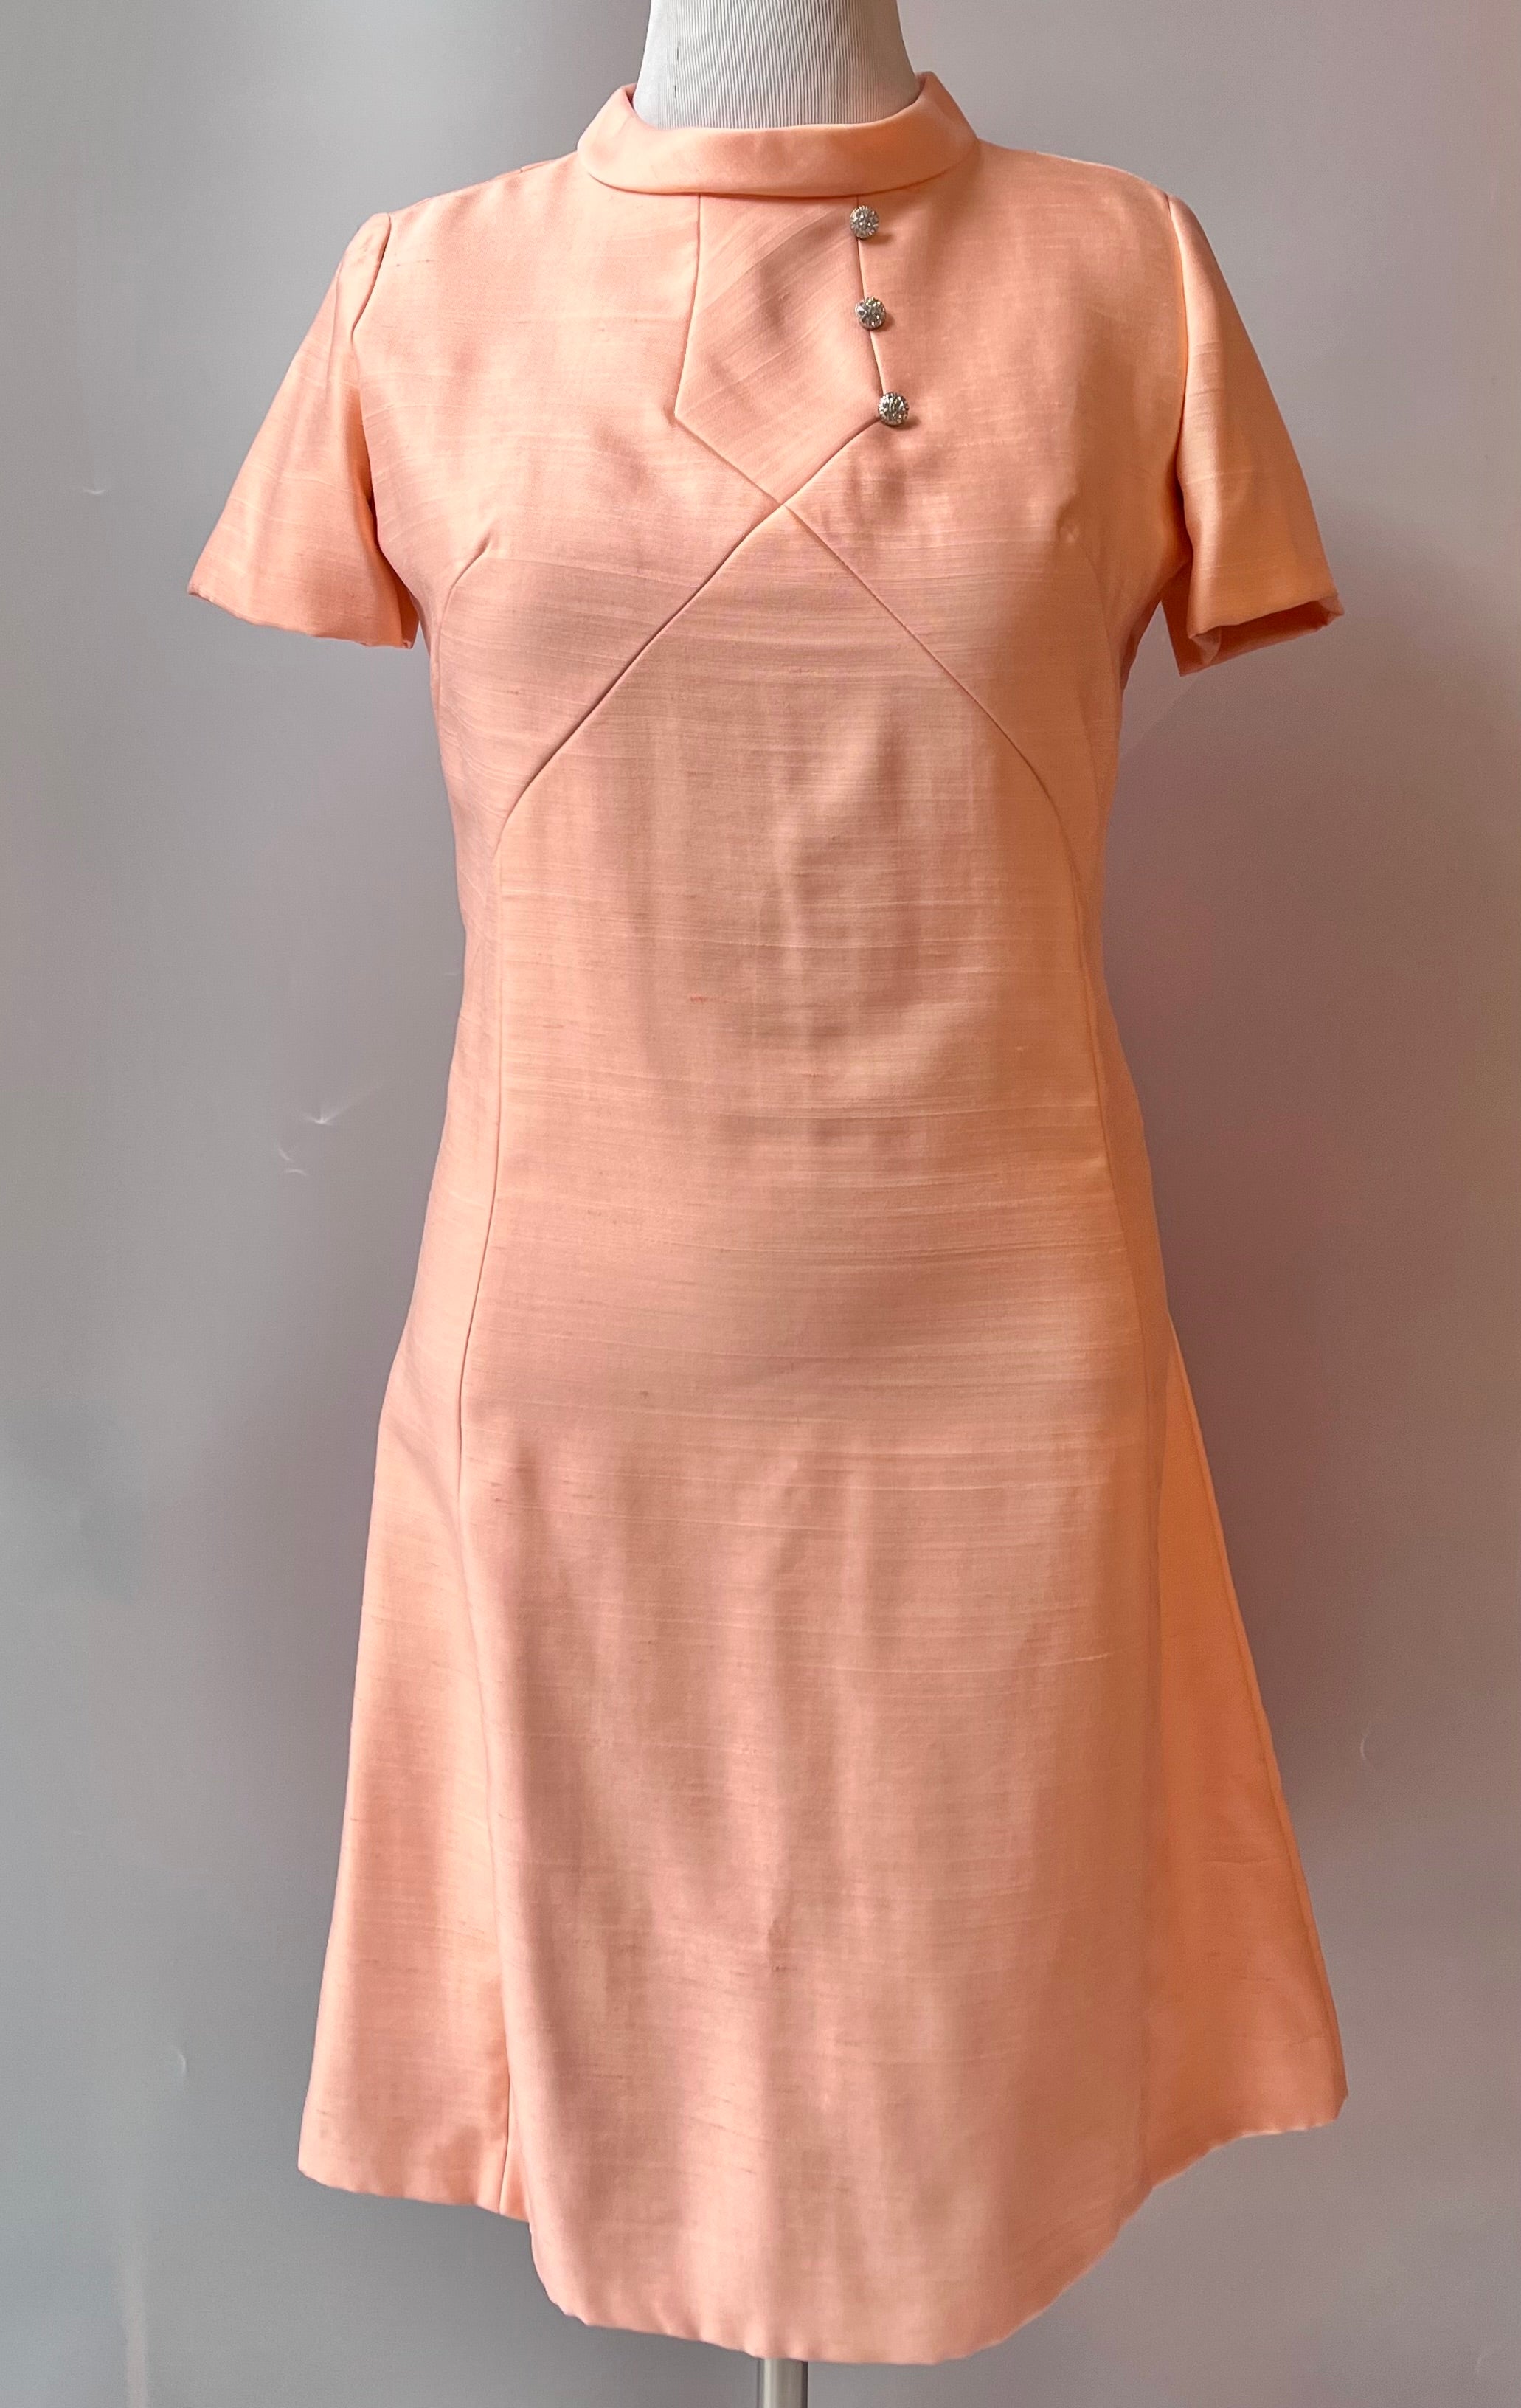 1960s Vintage Leslie Fay Peach Dress, Size: L/12